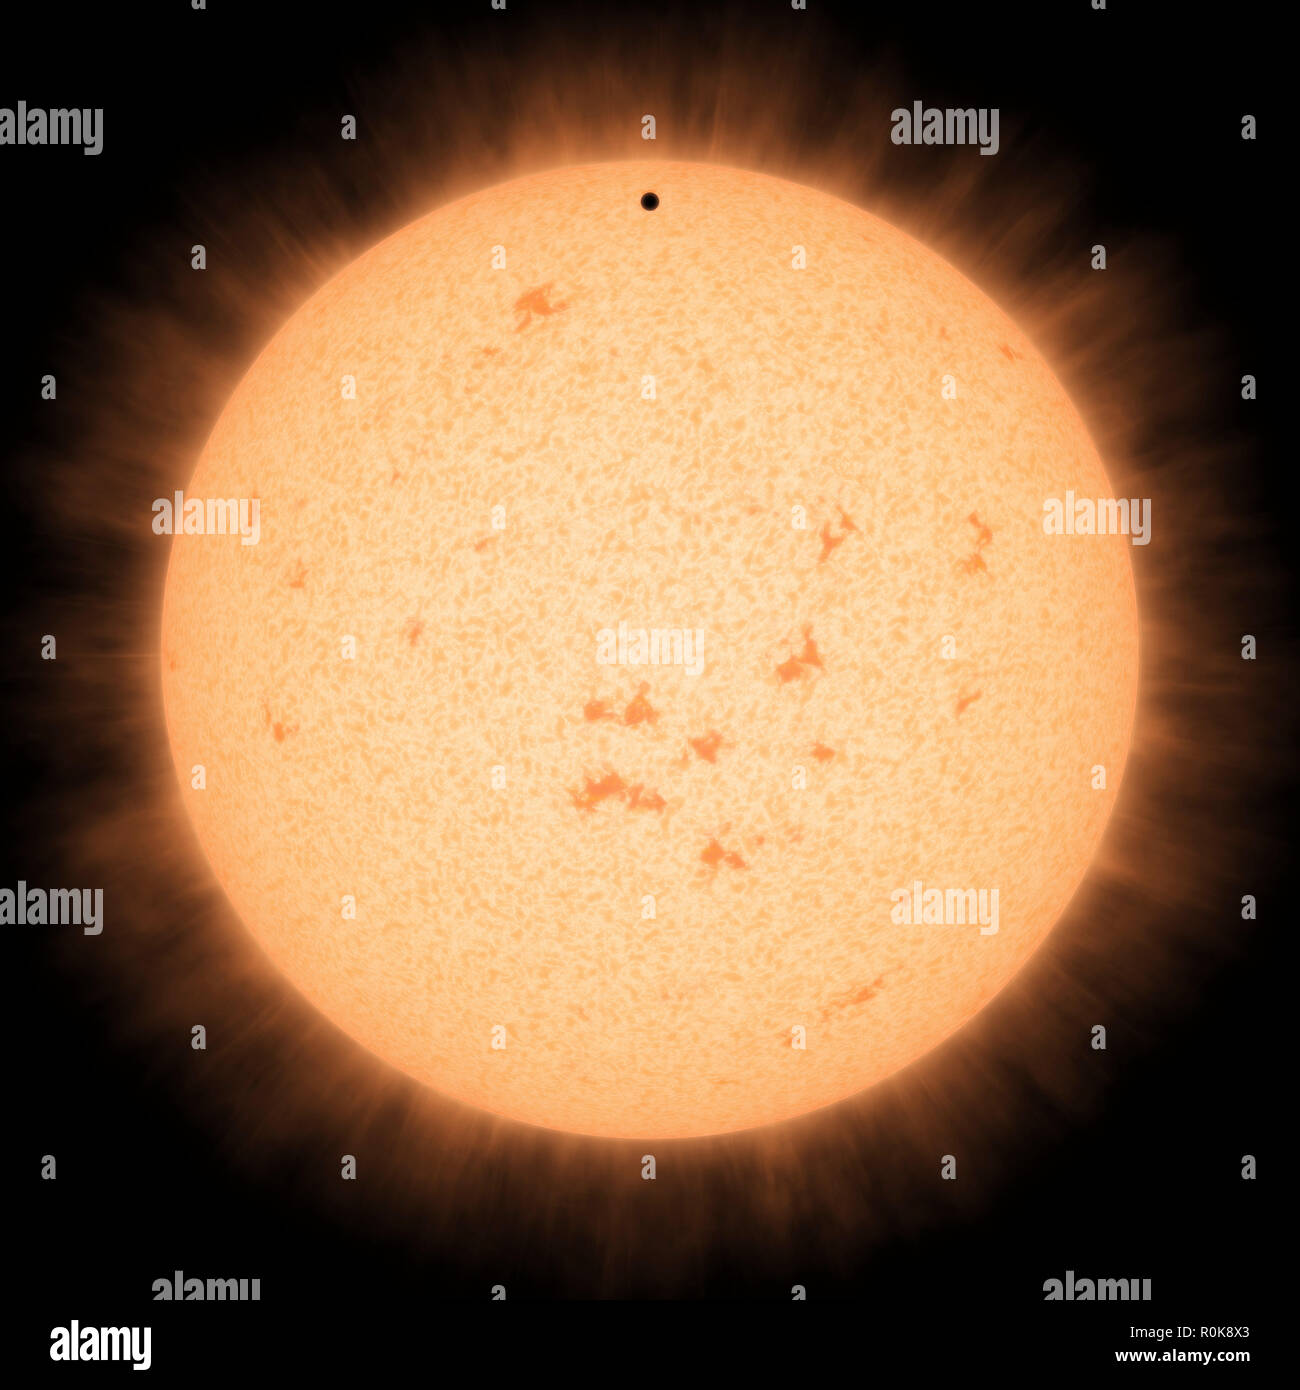 Artist's Konzept der heiße felsige Exoplaneten HD 219134 b Wie es vor seinem Stern durchläuft. Stockfoto